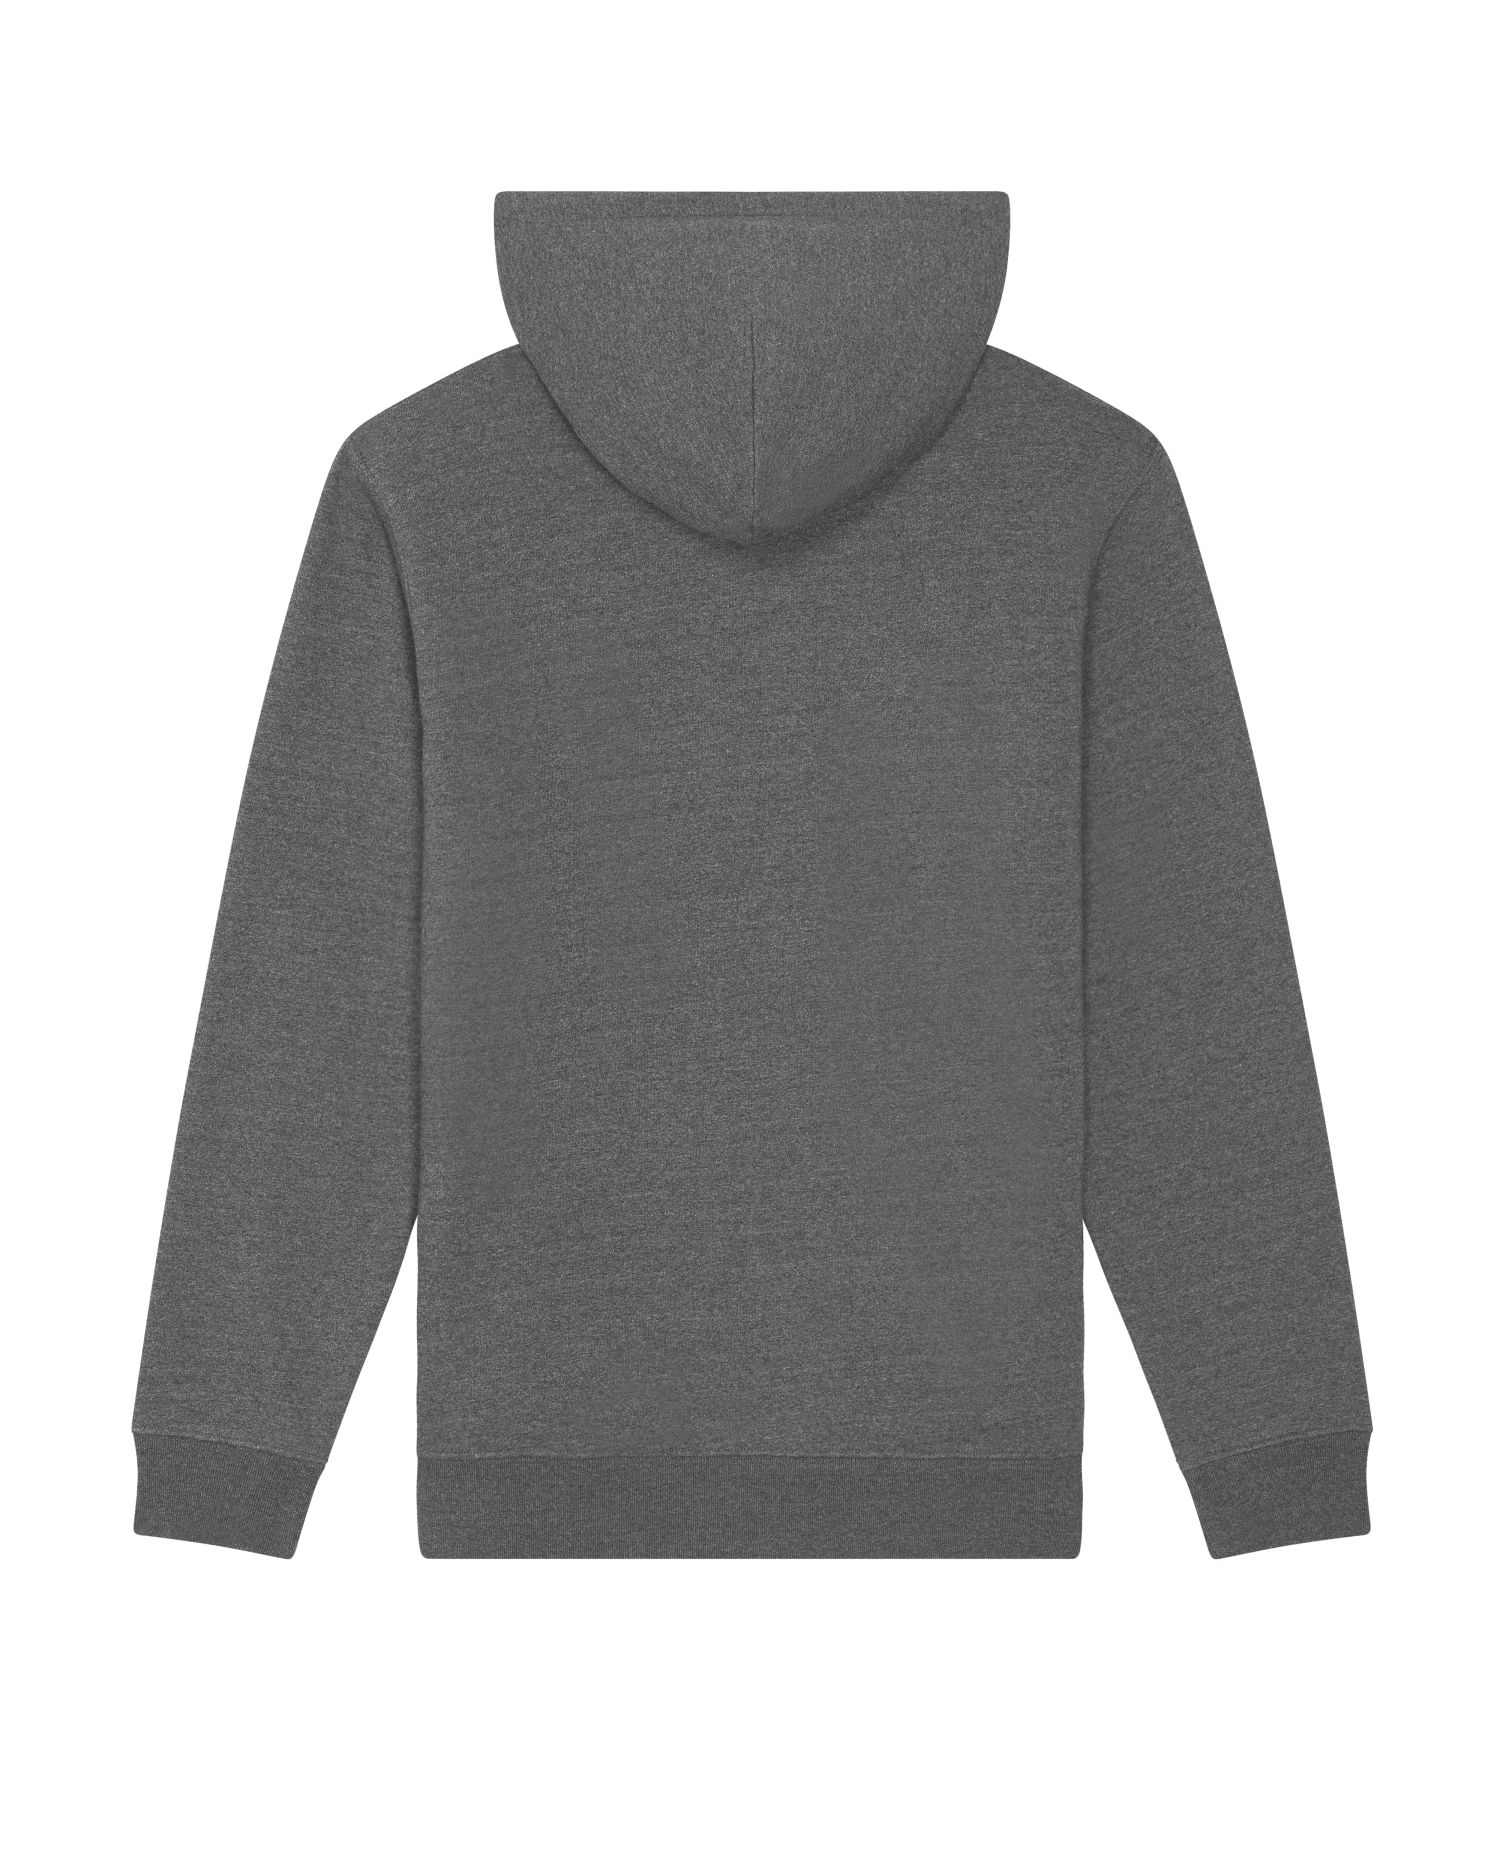 Hoodie sweatshirts RE-Cruiser in Farbe RE-Black